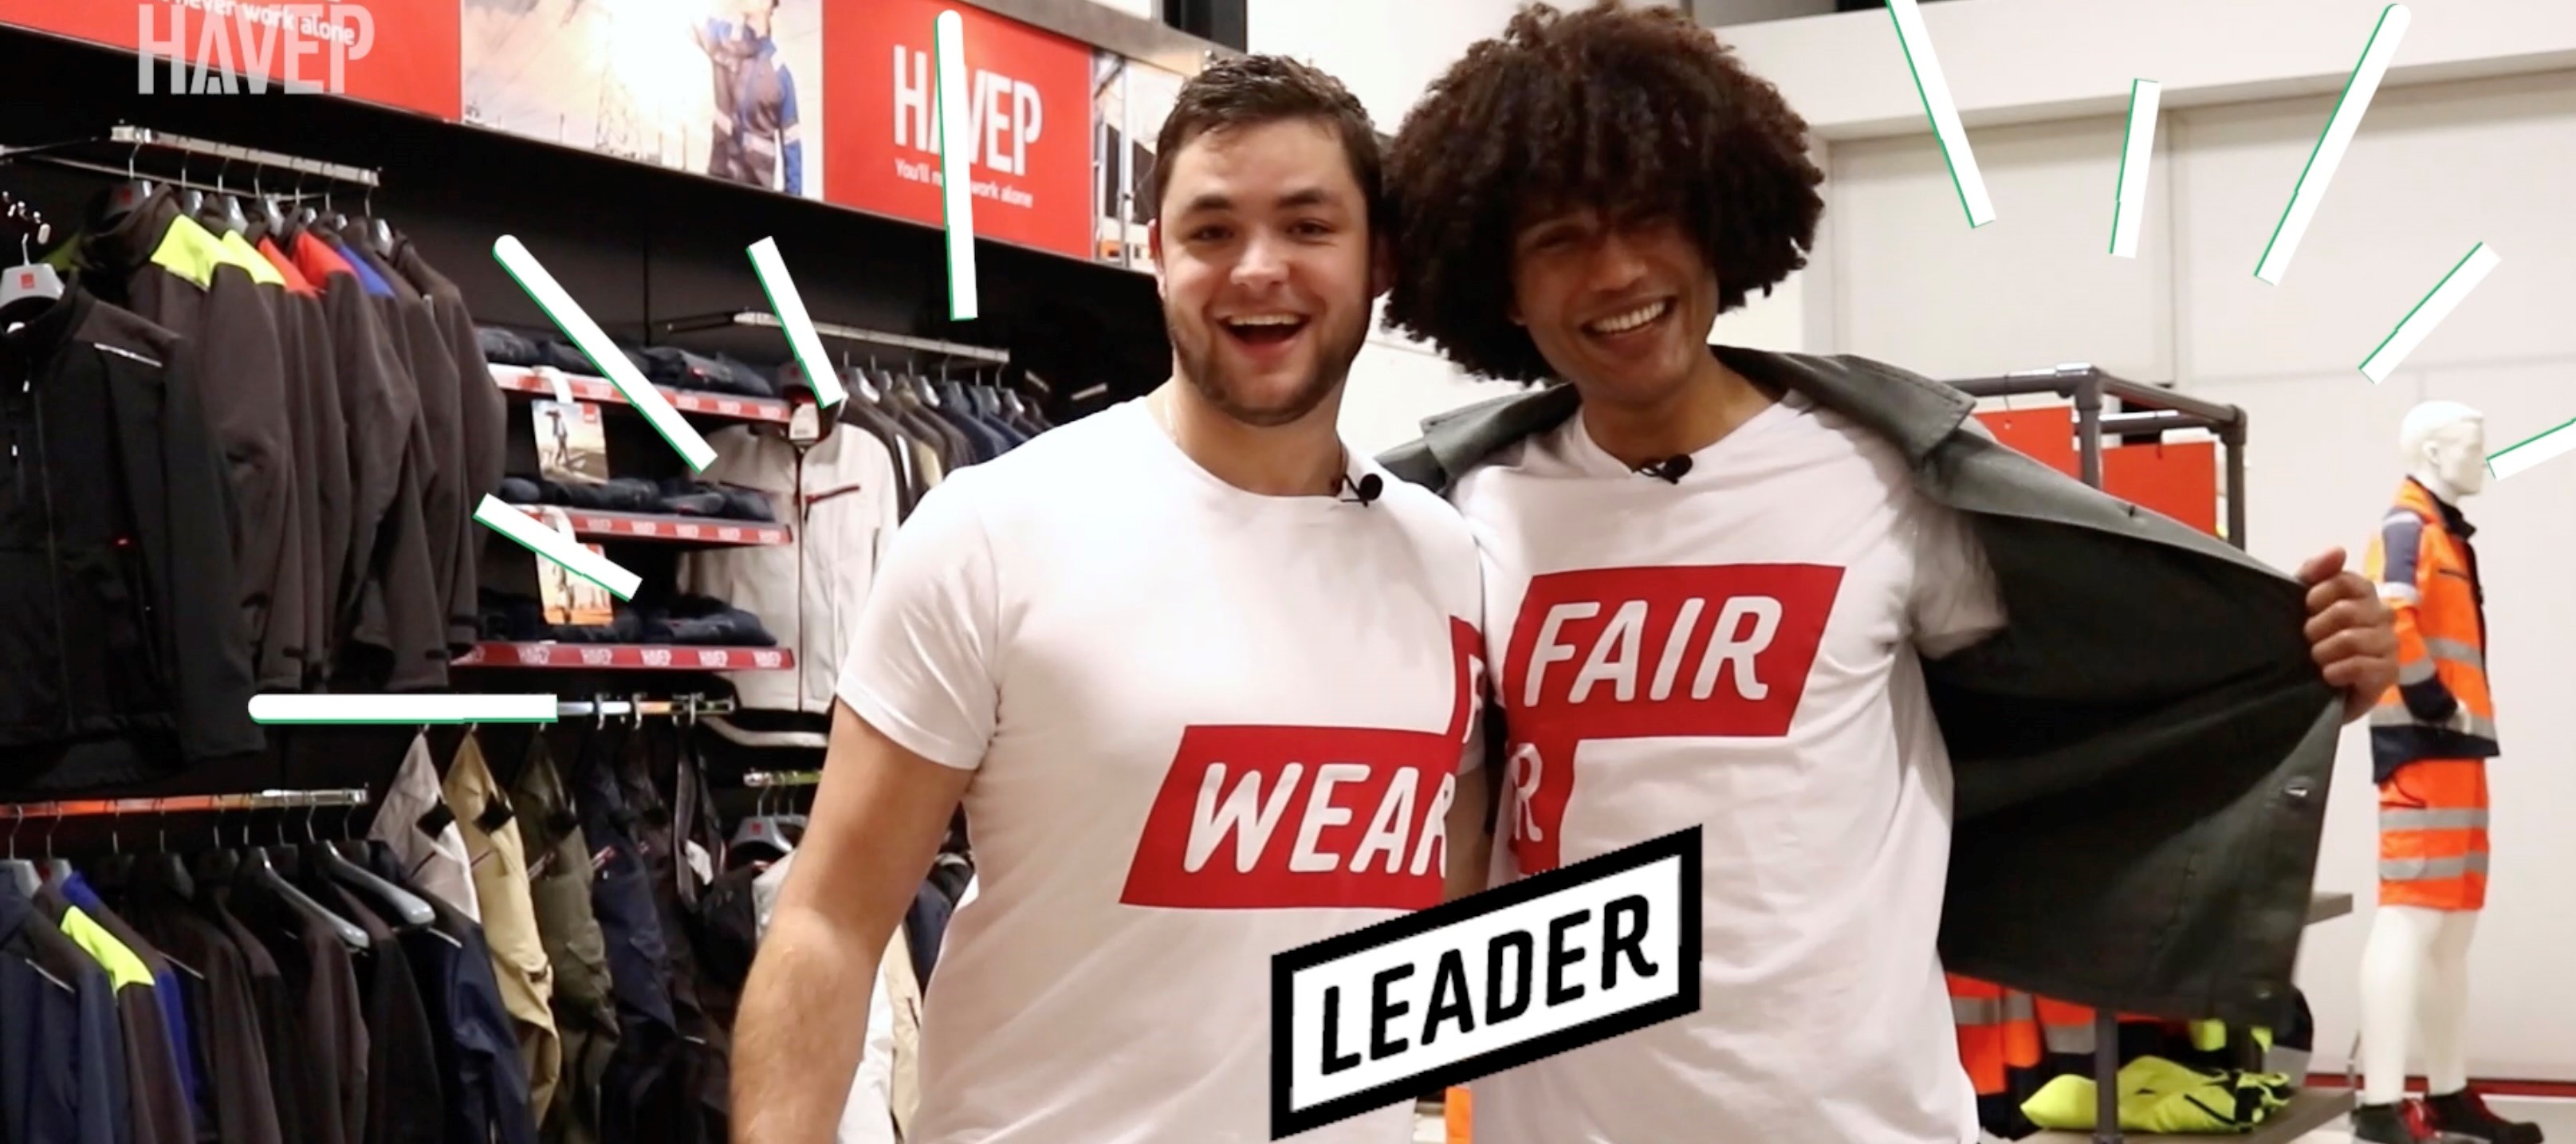 Fair wear Leader